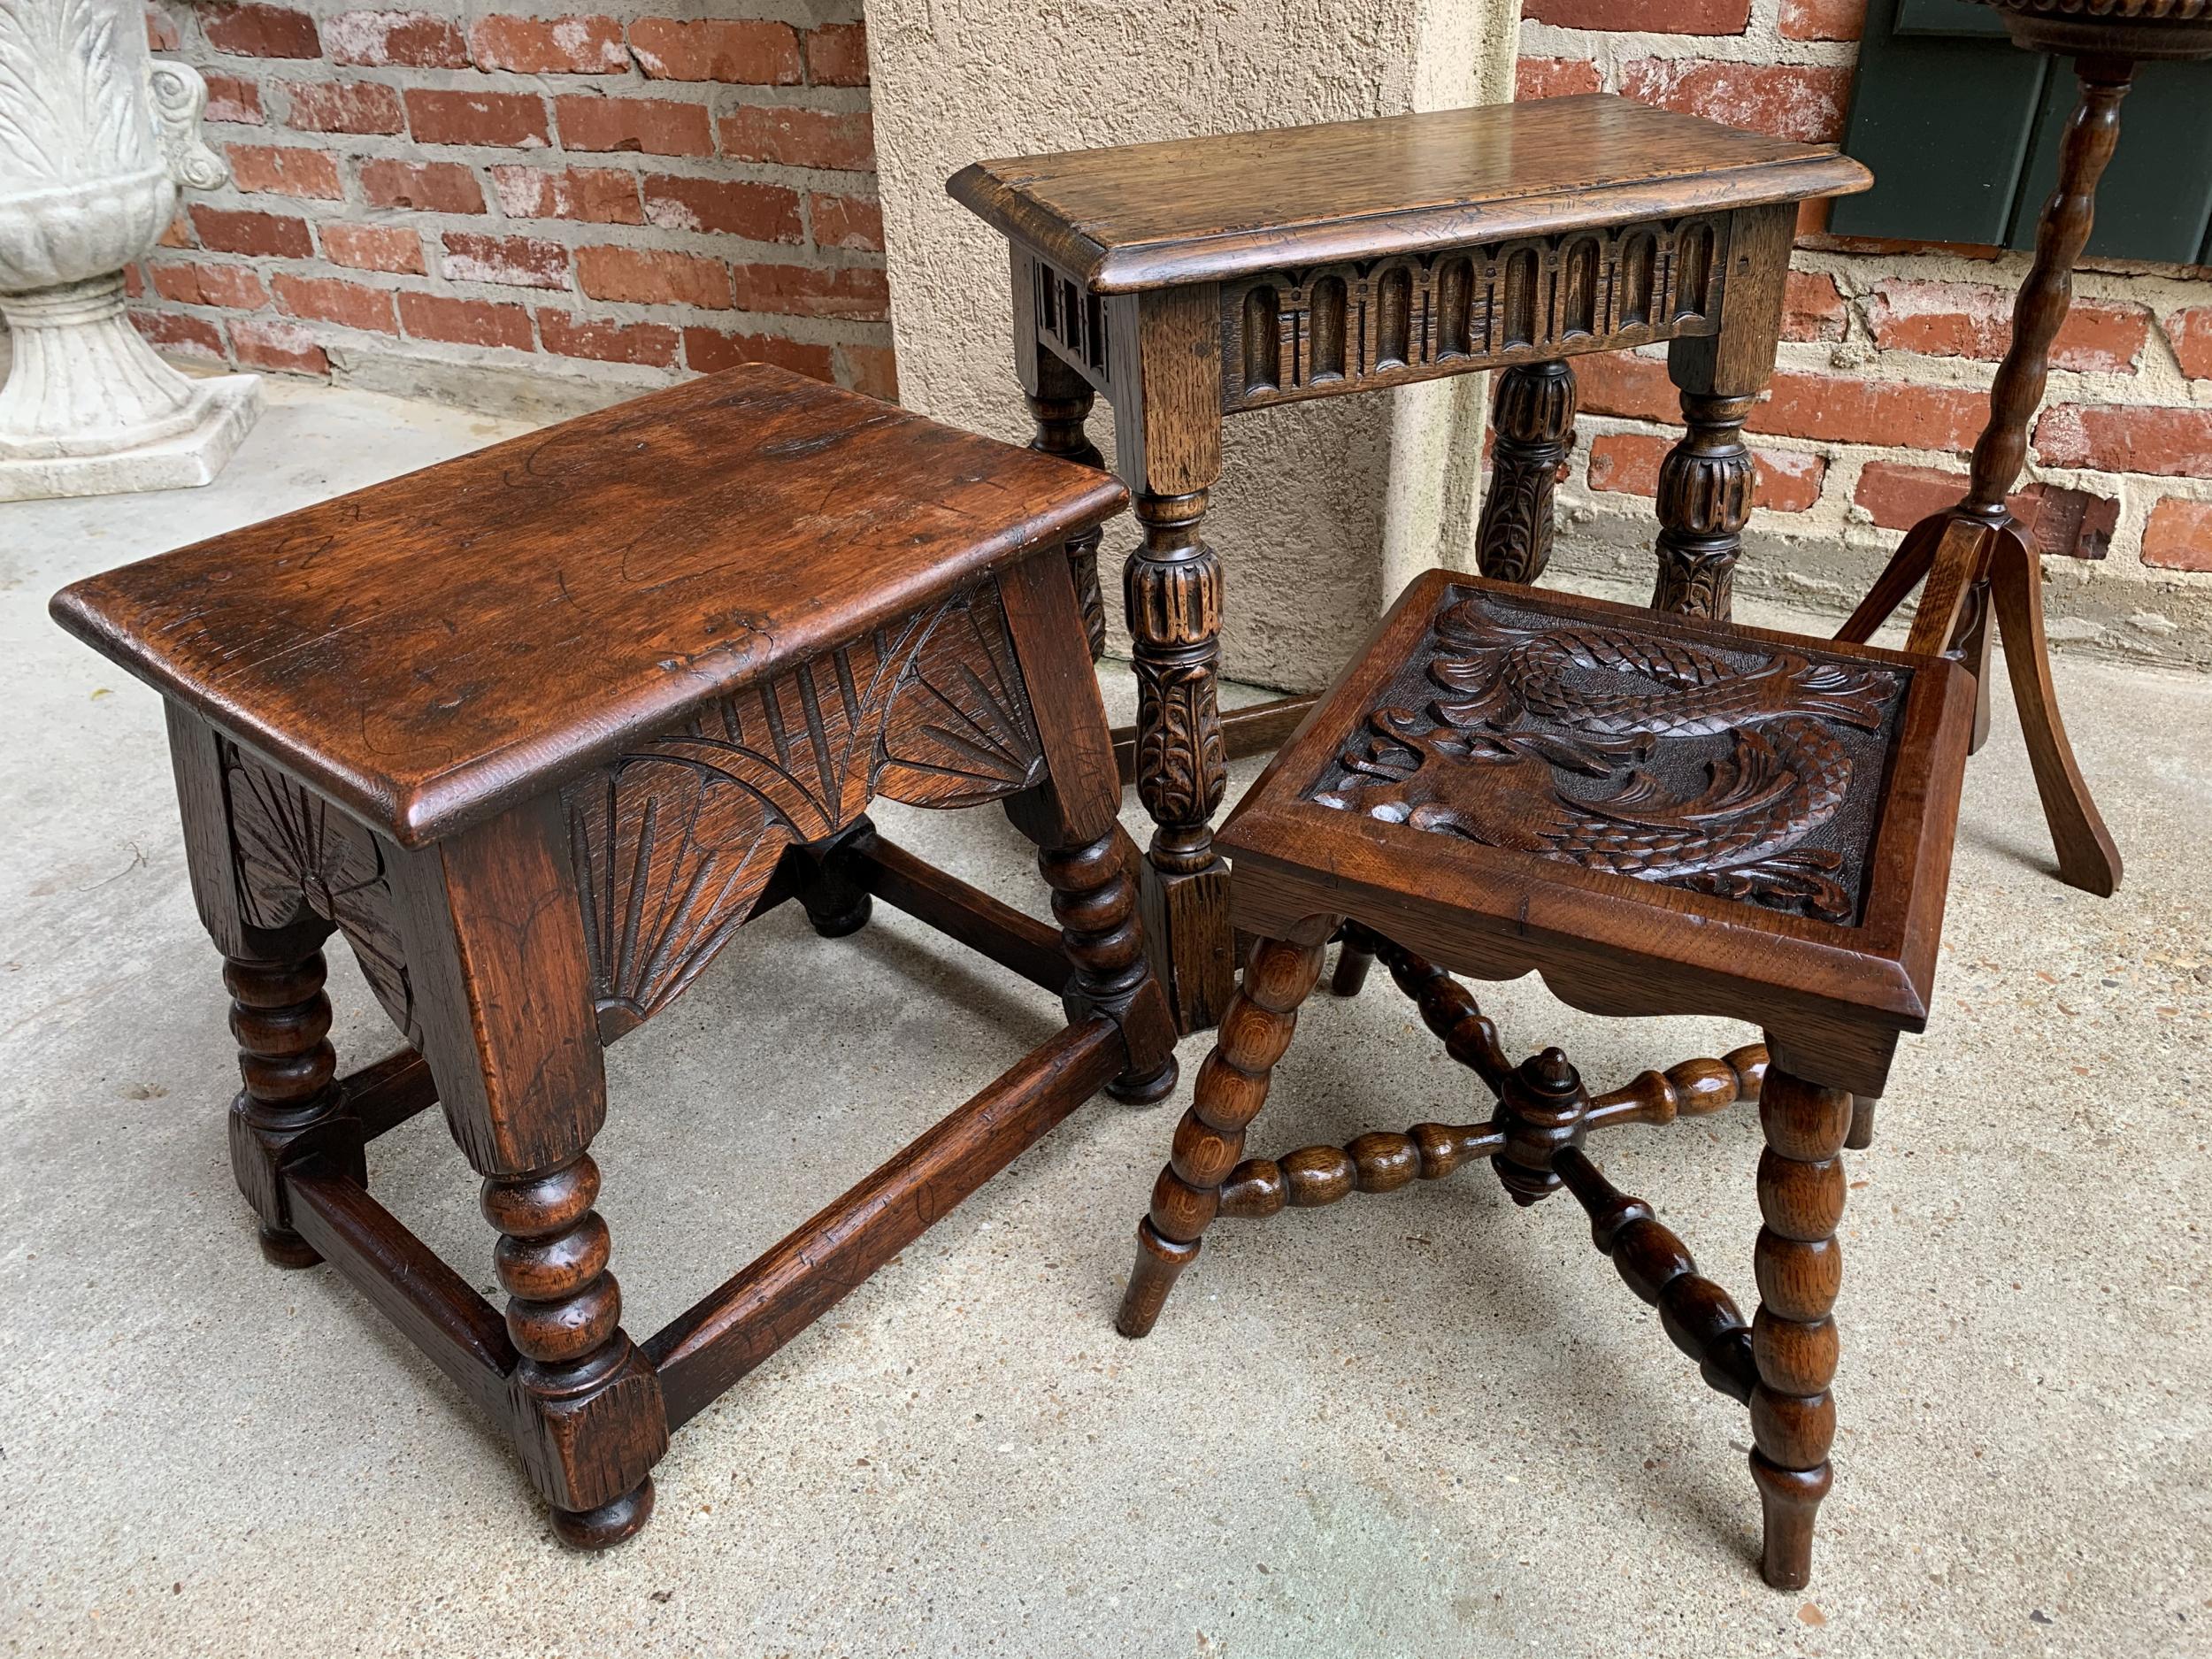 Ancienne table d'extrémité de banc ou bout de table carrée sculptée anglaise Renaissance  2